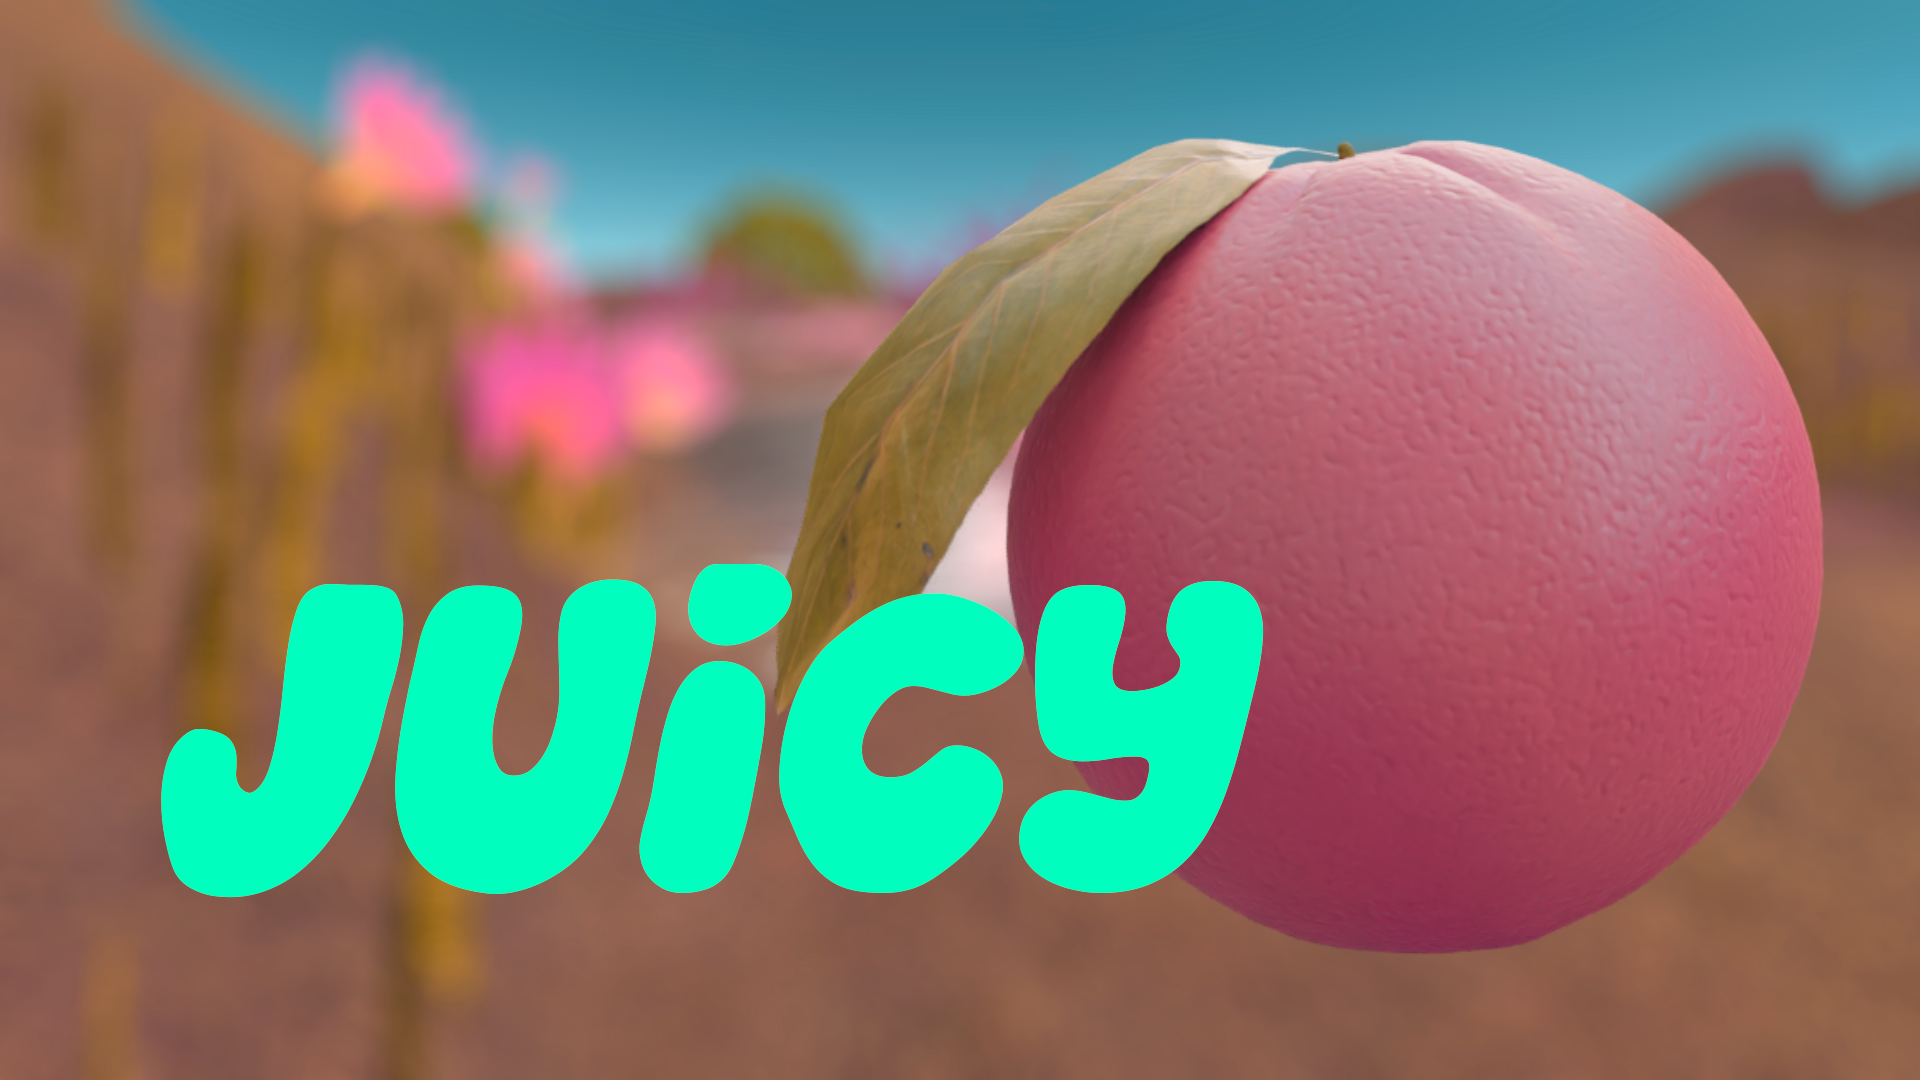 Juicy Game Image